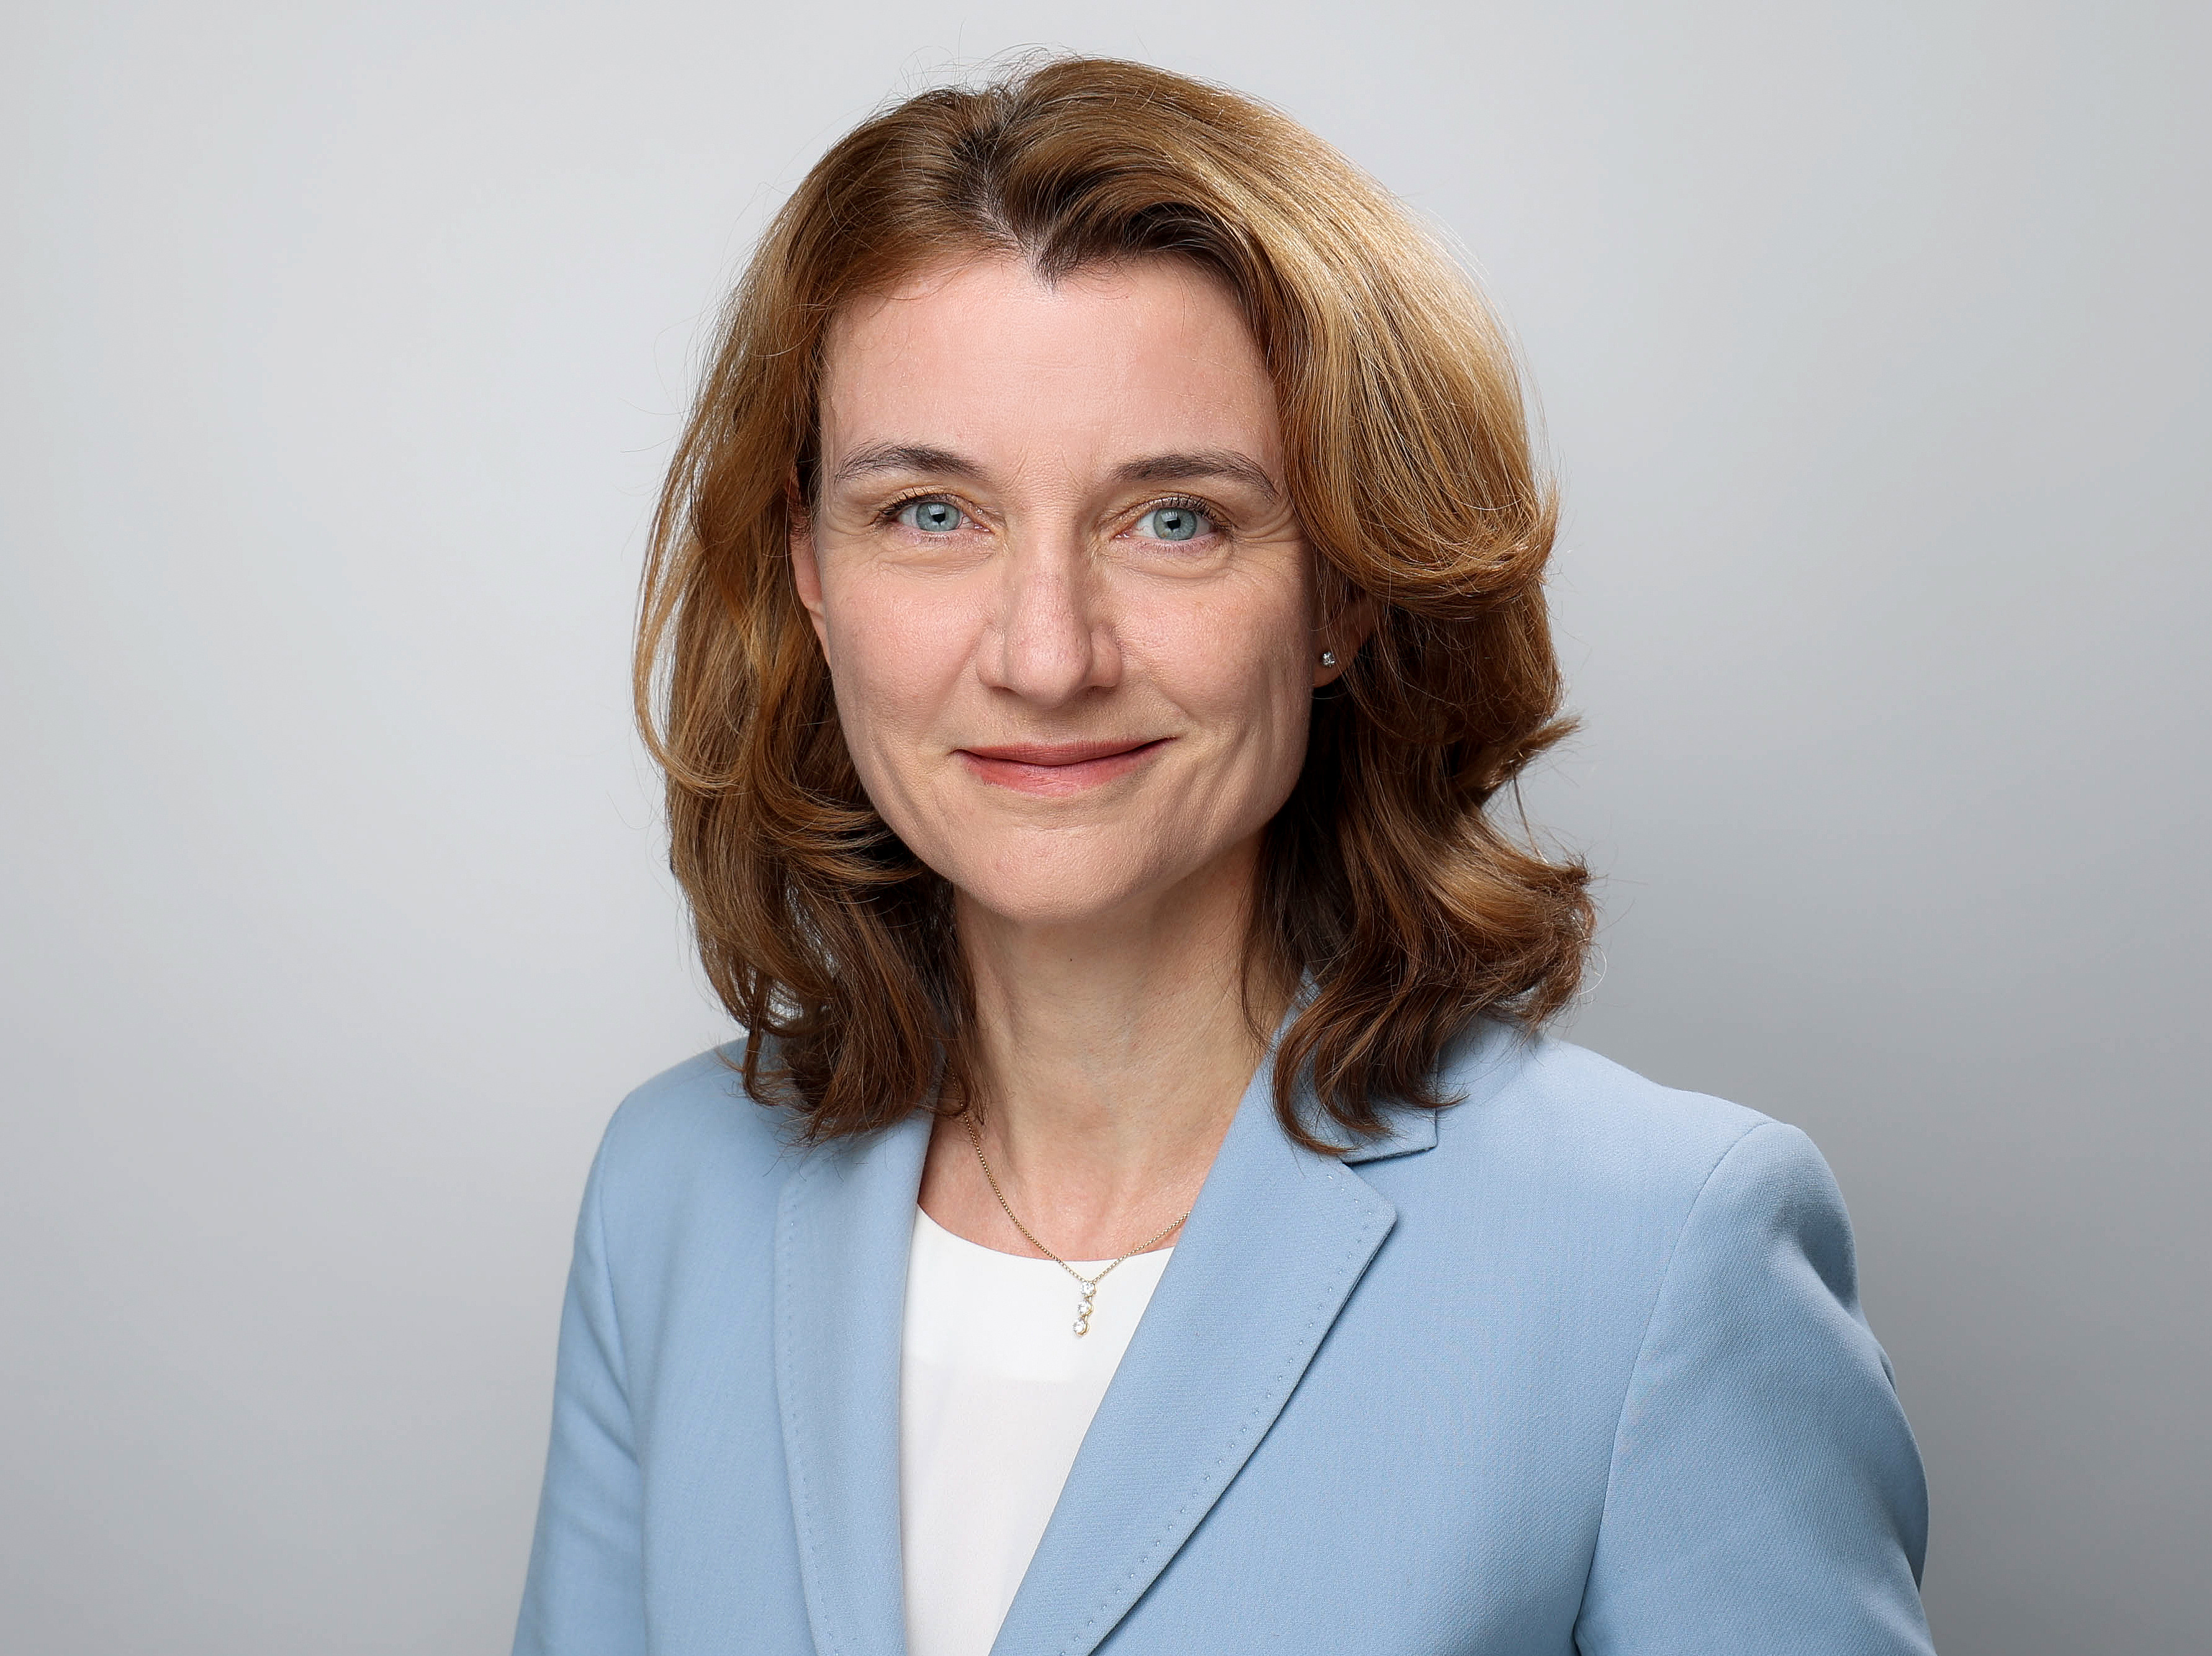 Profilbild von Prof. Dr. Daniela Schwarzer vor einem hellgrauen Hintergrund